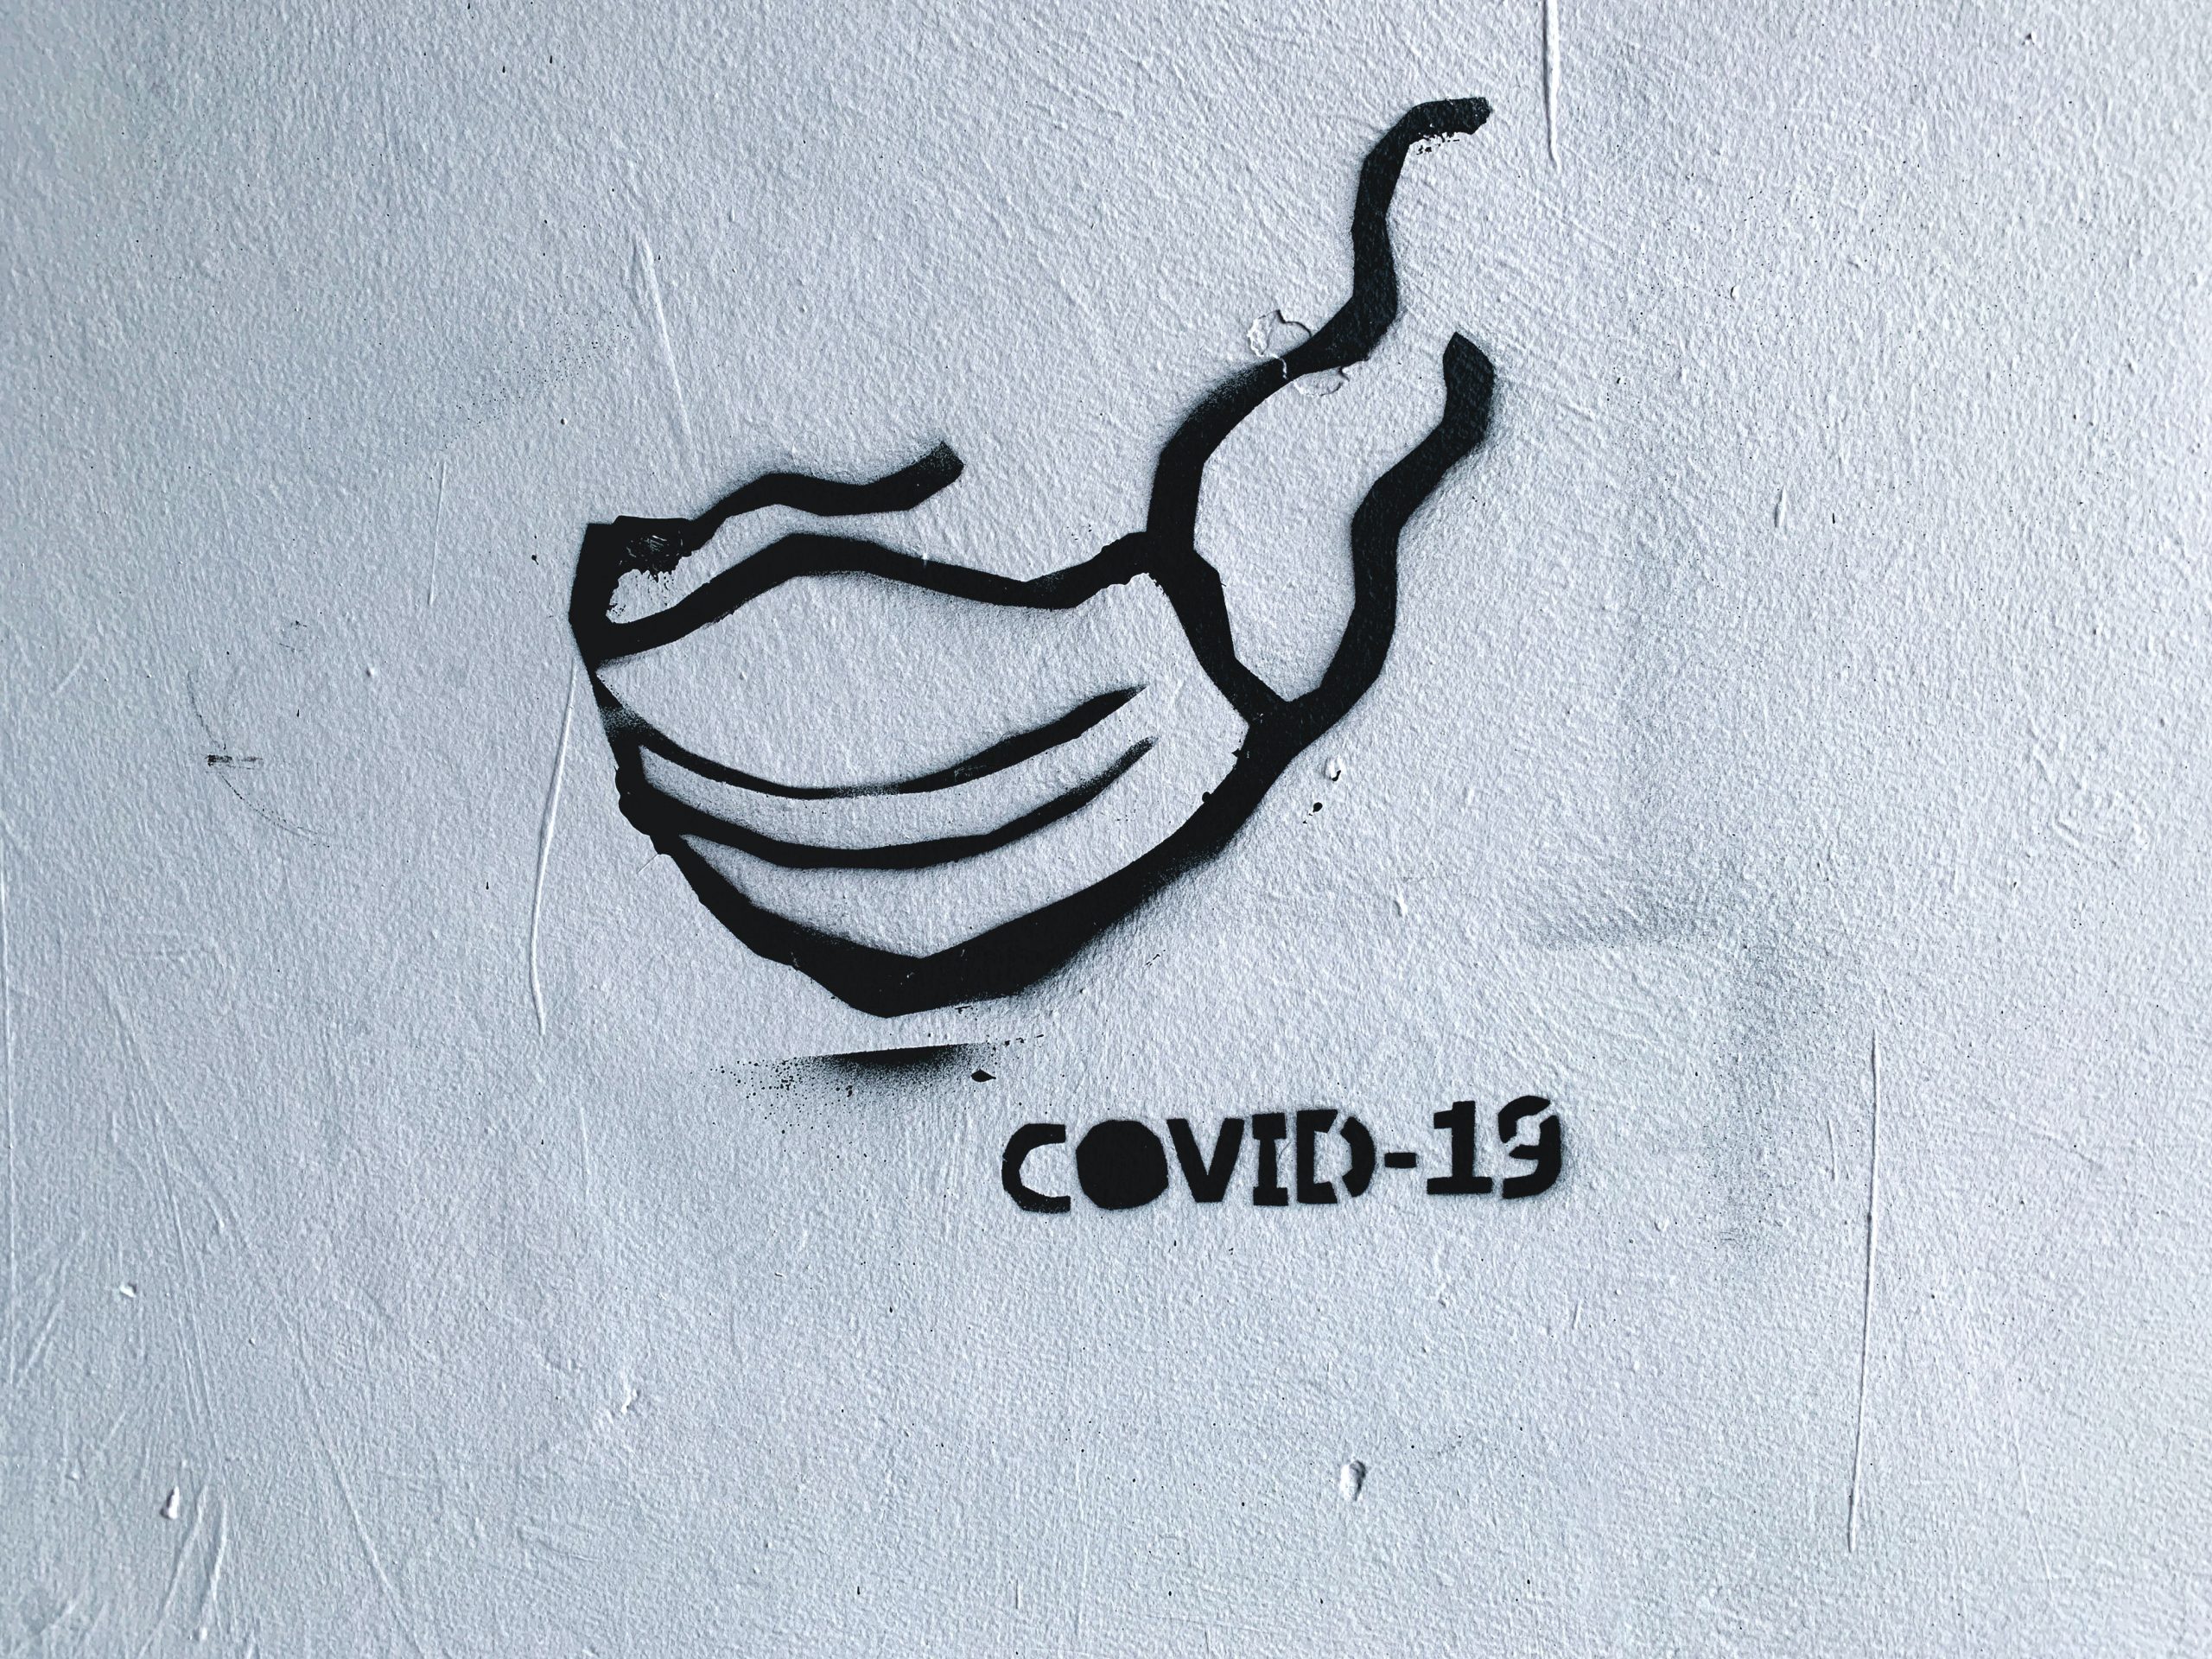 coronavirus covid-19 graphic